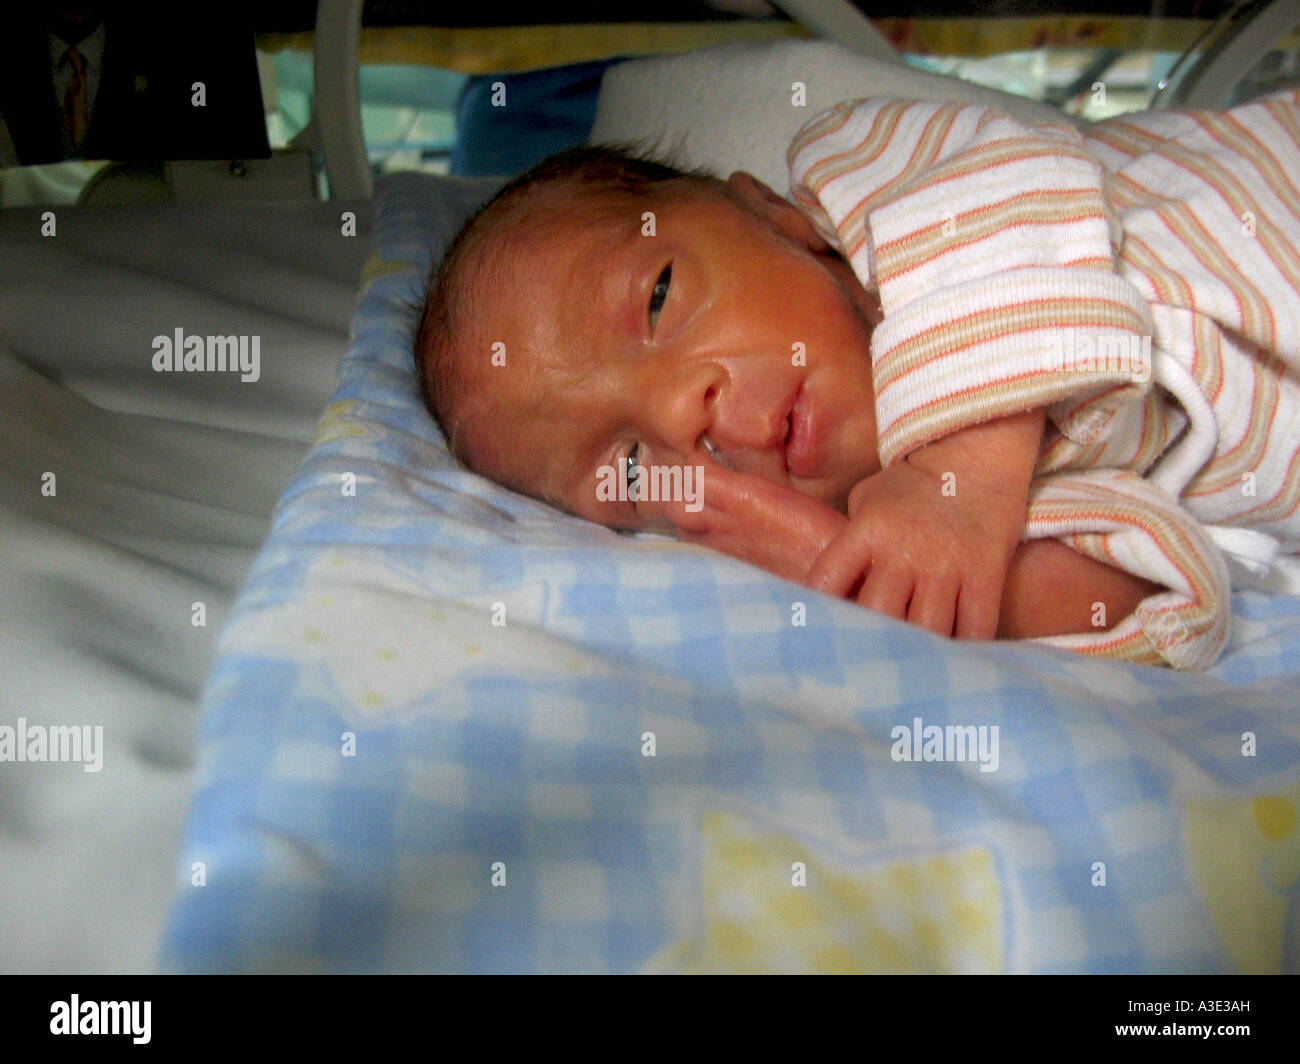 1 week old premature baby boy born at 28 weeks gestation ...